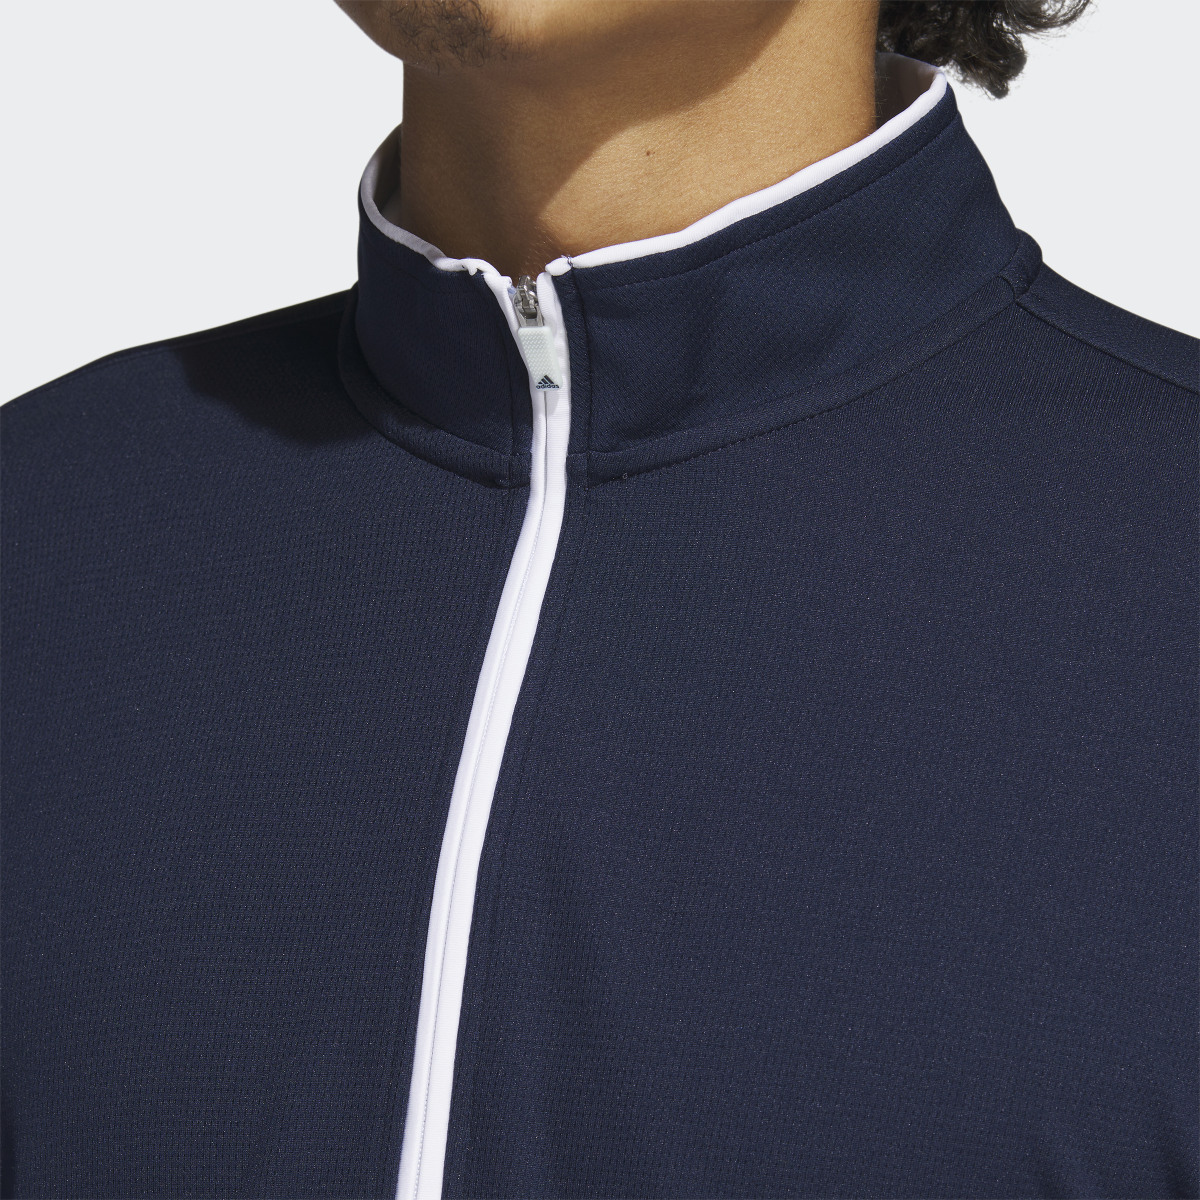 Adidas Quarter-Zip Pullover. 7